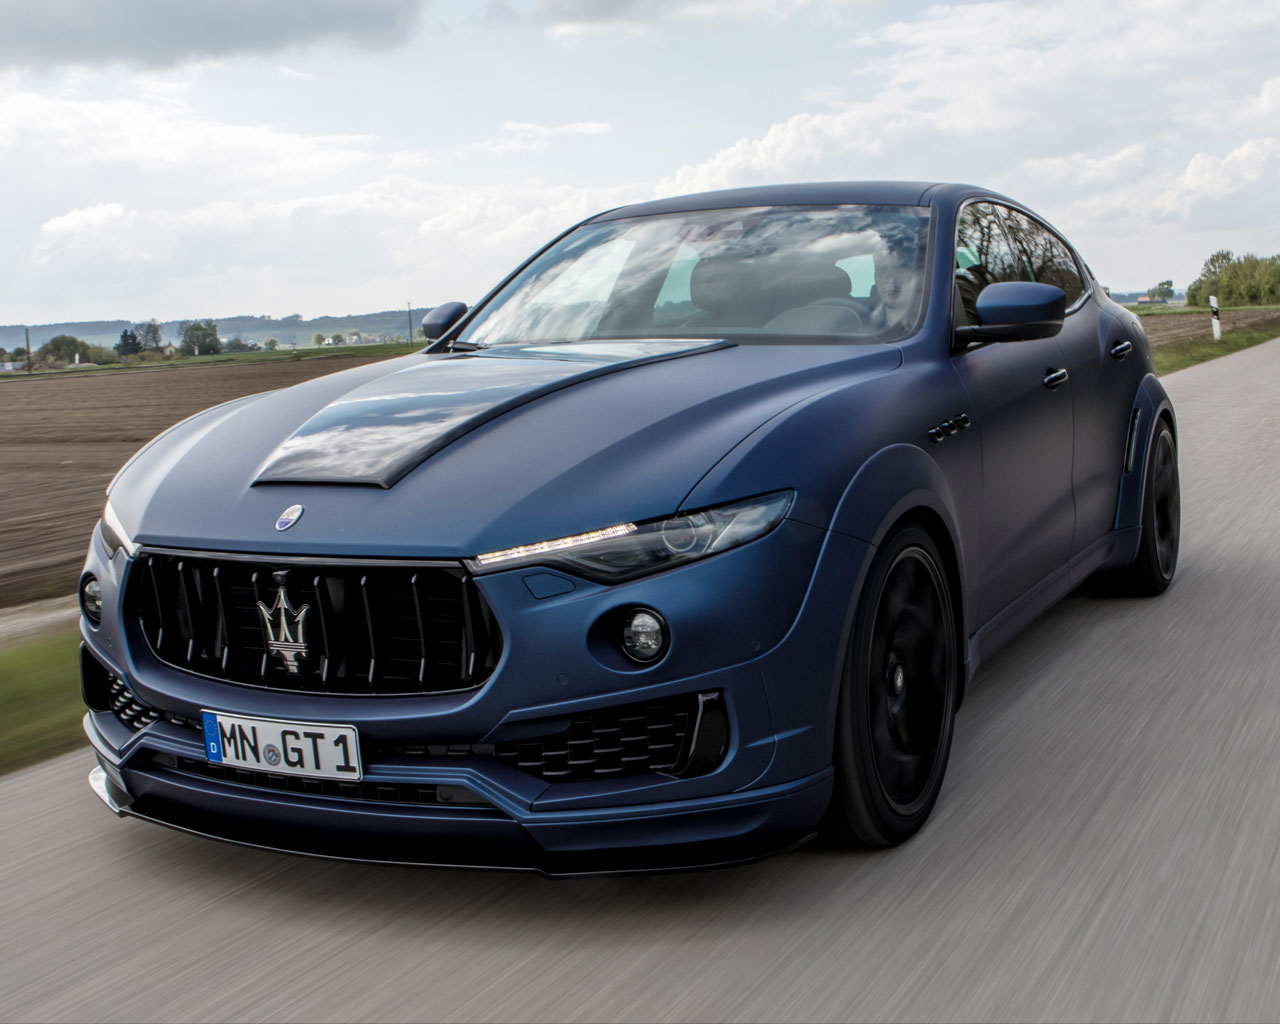 Maserati Levante Esteso Novitec 2019